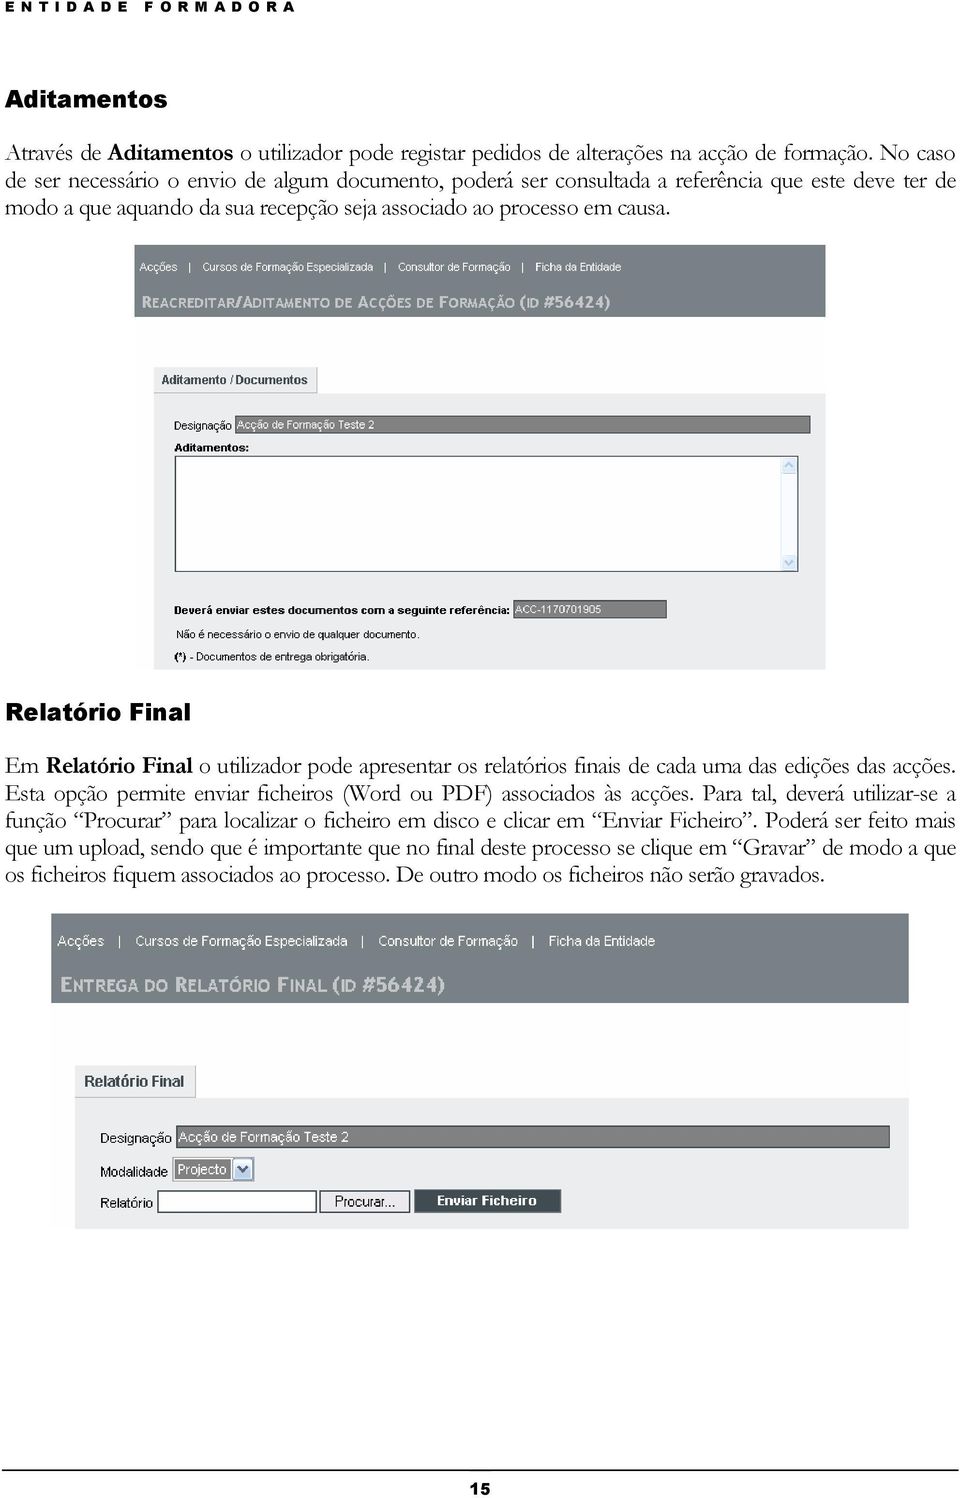 Relatório Final Em Relatório Final o utilizador pode apresentar os relatórios finais de cada uma das edições das acções. Esta opção permite enviar ficheiros (Word ou PDF) associados às acções.